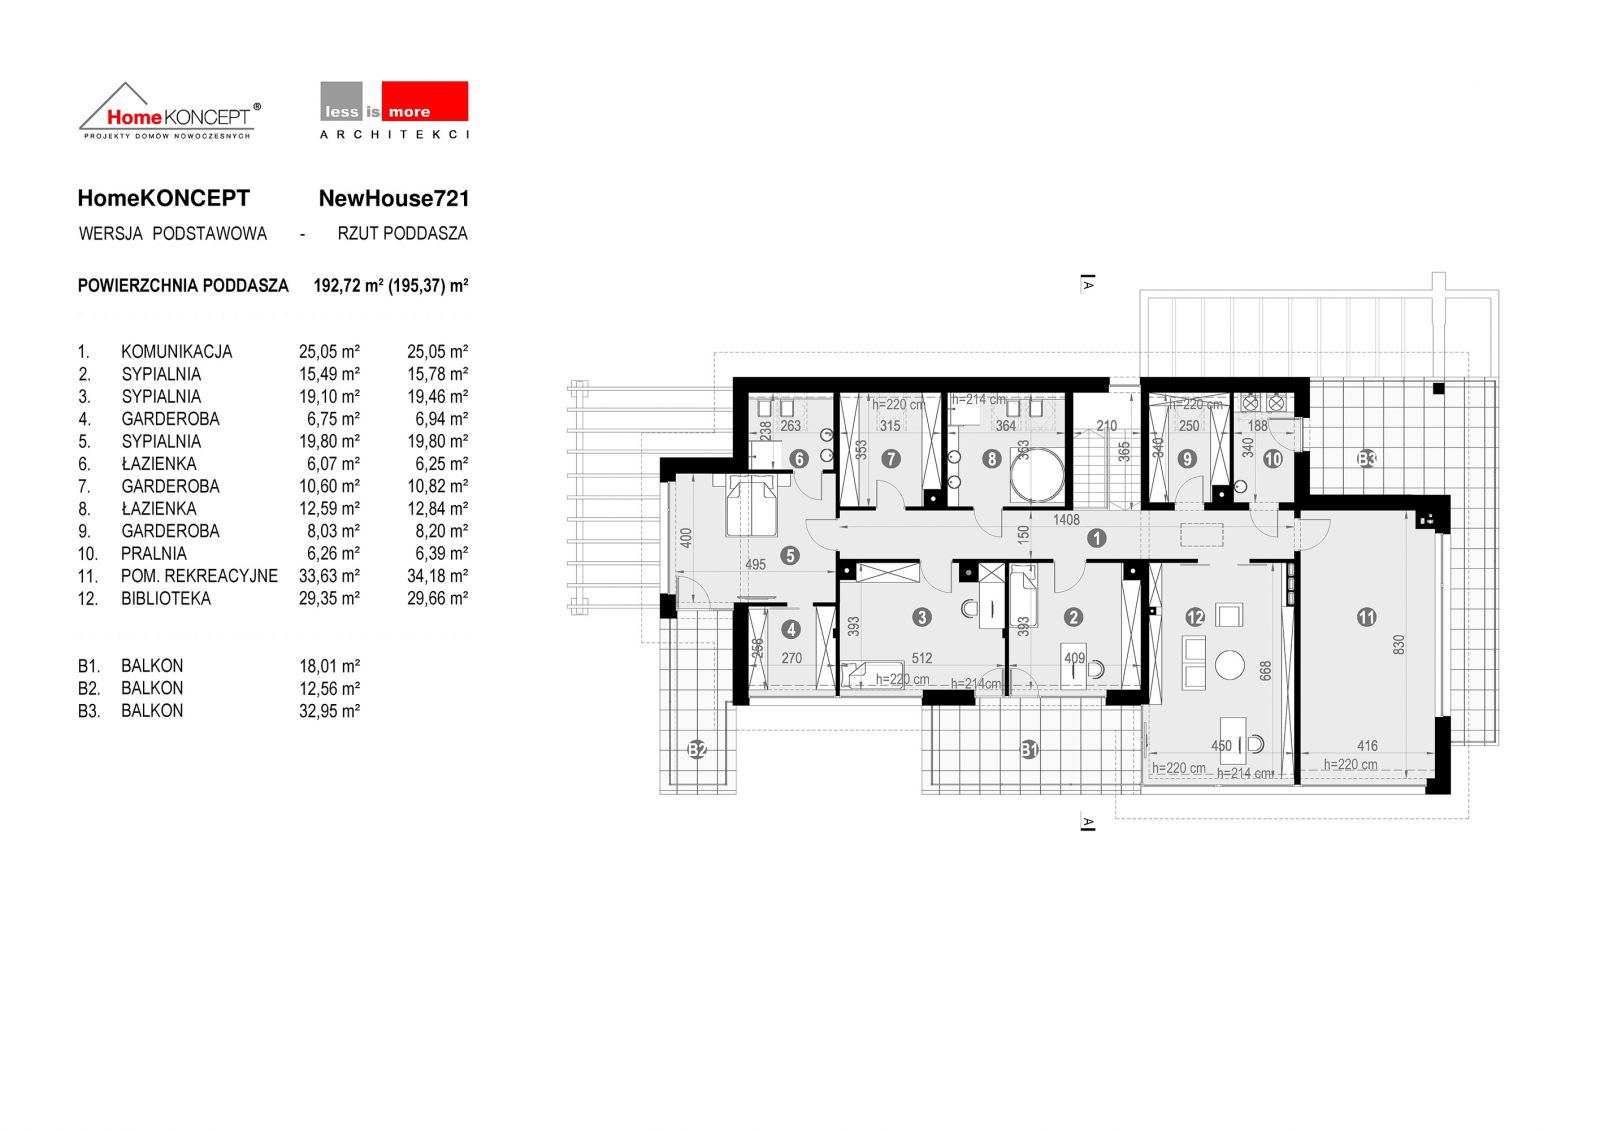 W HomeKONCEPT New House 721 do dyspozycji mamy master bedroom o łącznej powierzchni podłogi ponad 32 m2.